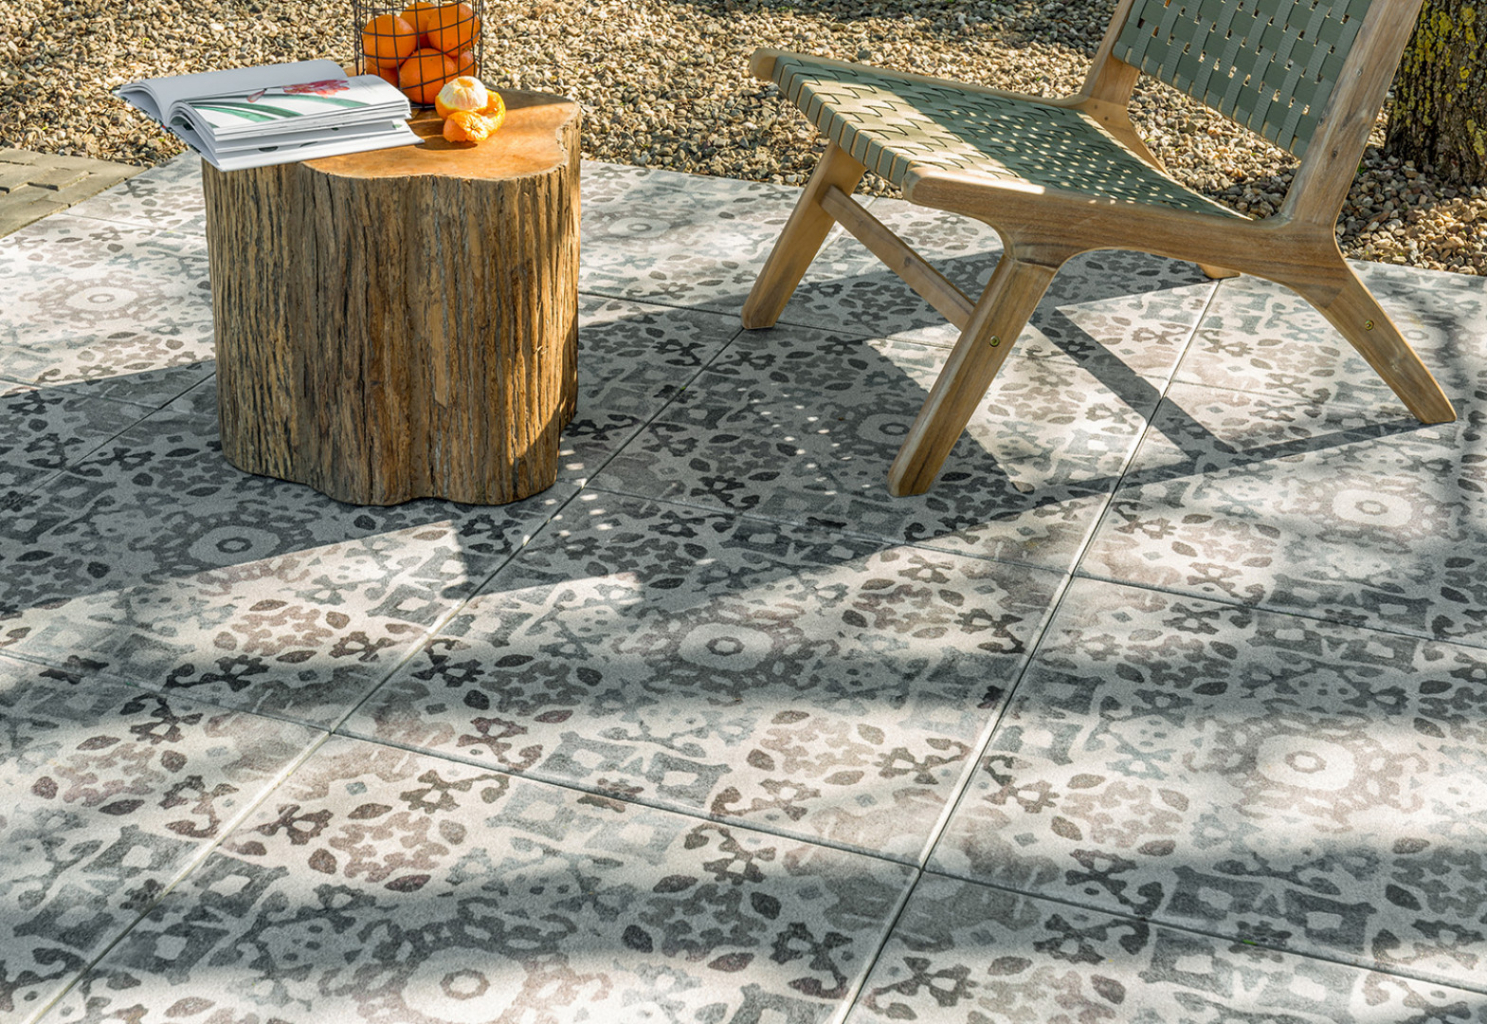 plan zacht antwoord 5 manieren om een tapijt van tegels in je tuin te leggen | Bestratingsweb.nl